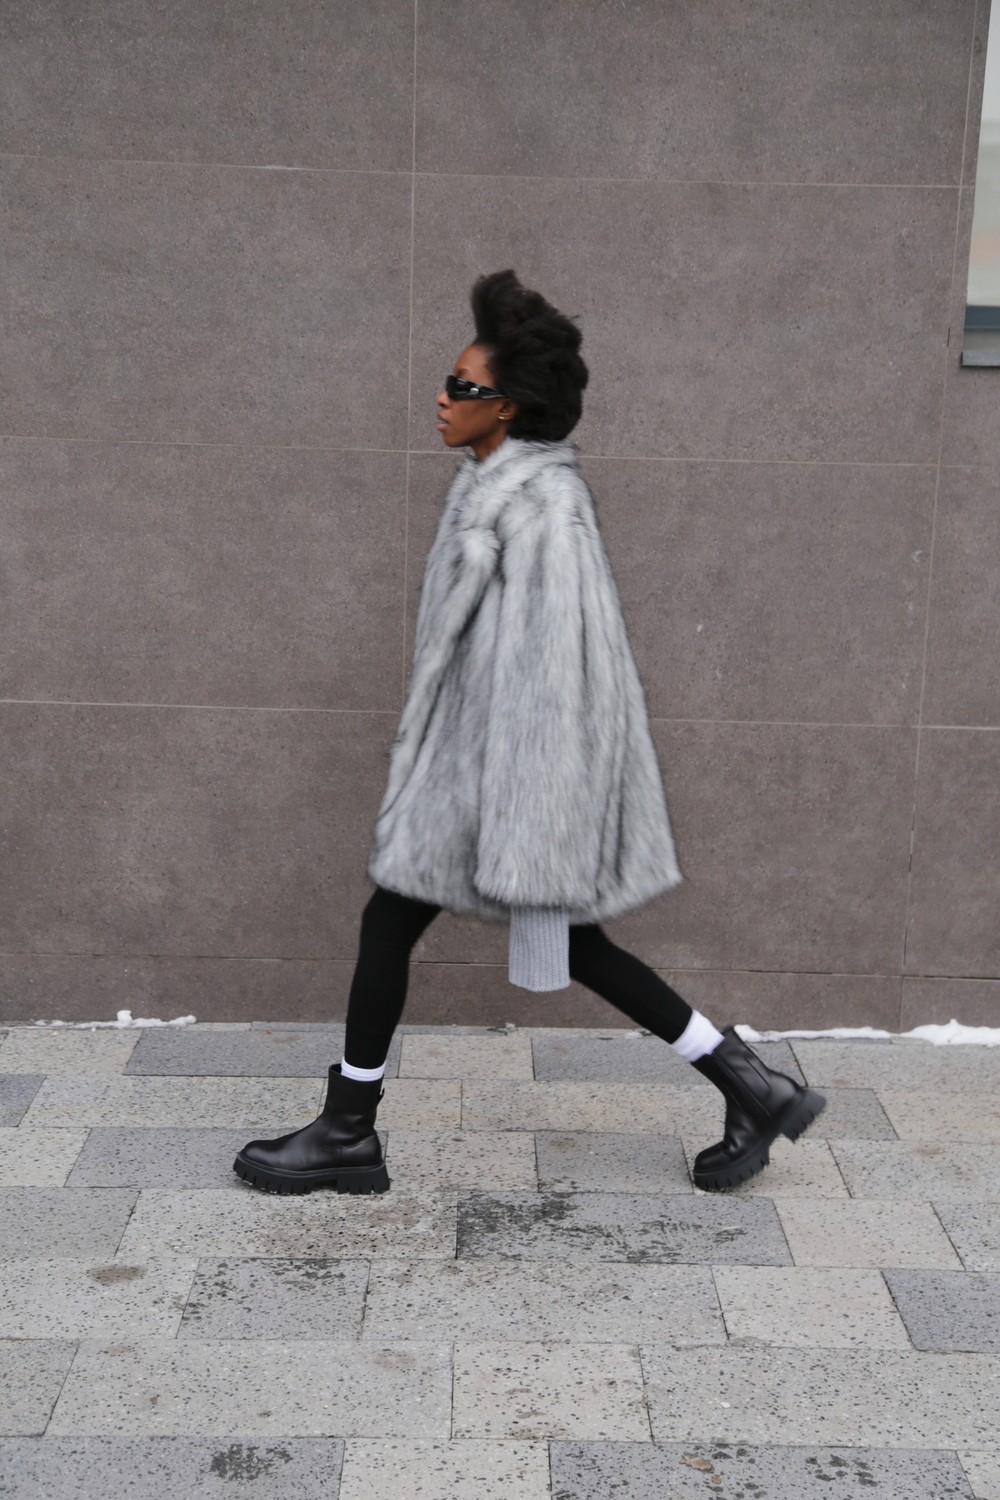 Fur coat Monica in gray